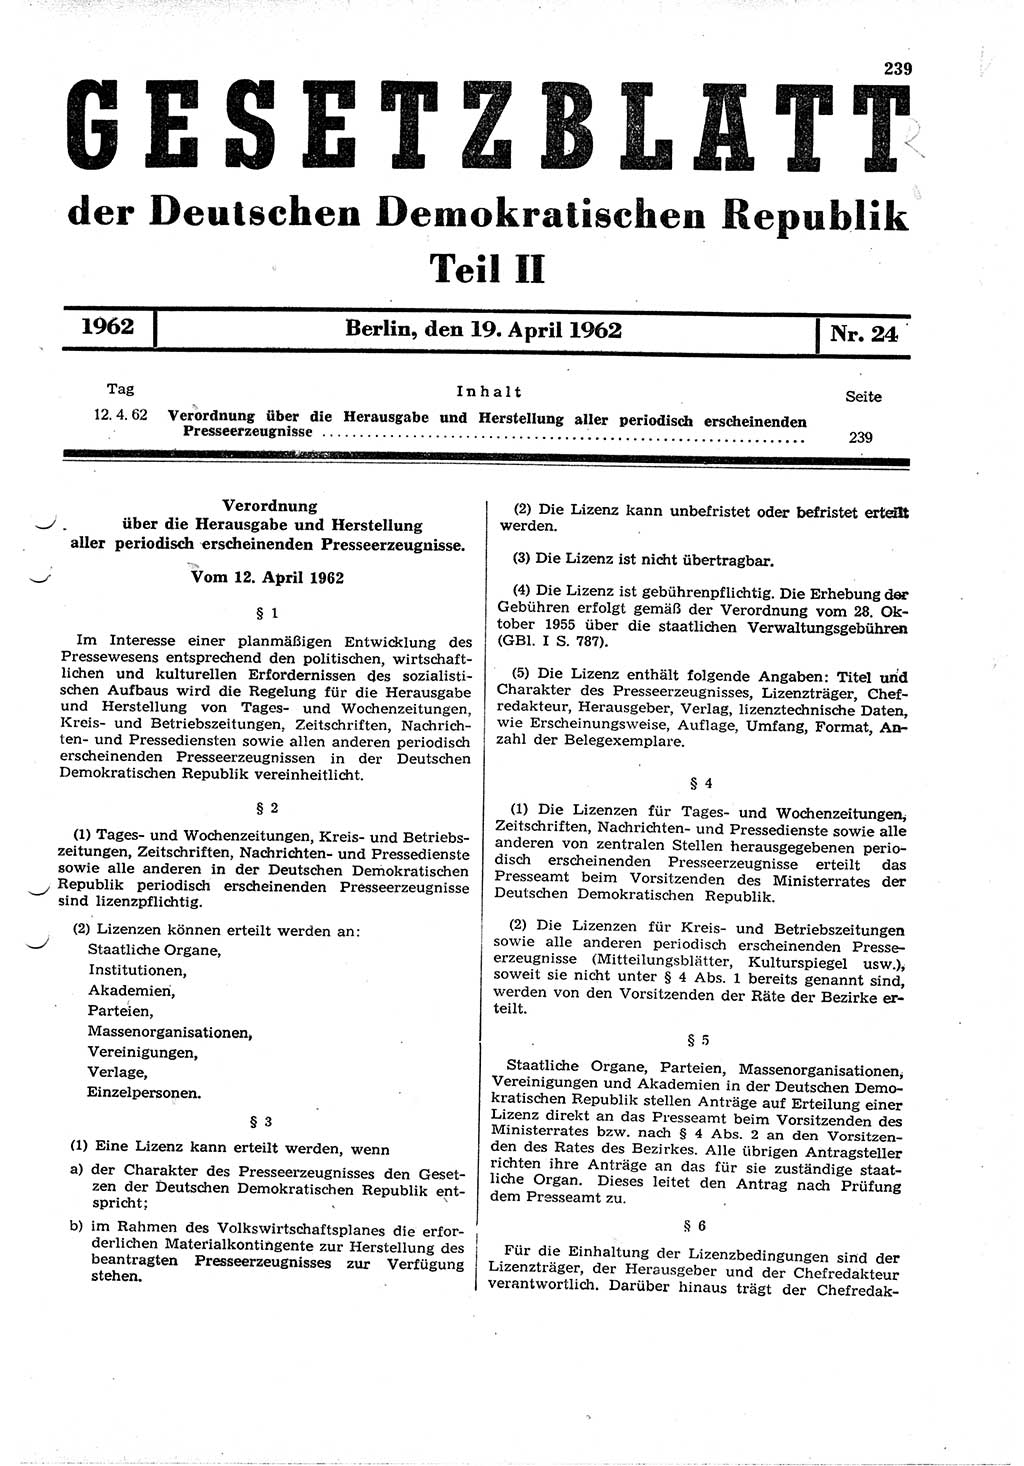 Gesetzblatt (GBl.) der Deutschen Demokratischen Republik (DDR) Teil ⅠⅠ 1962, Seite 239 (GBl. DDR ⅠⅠ 1962, S. 239)